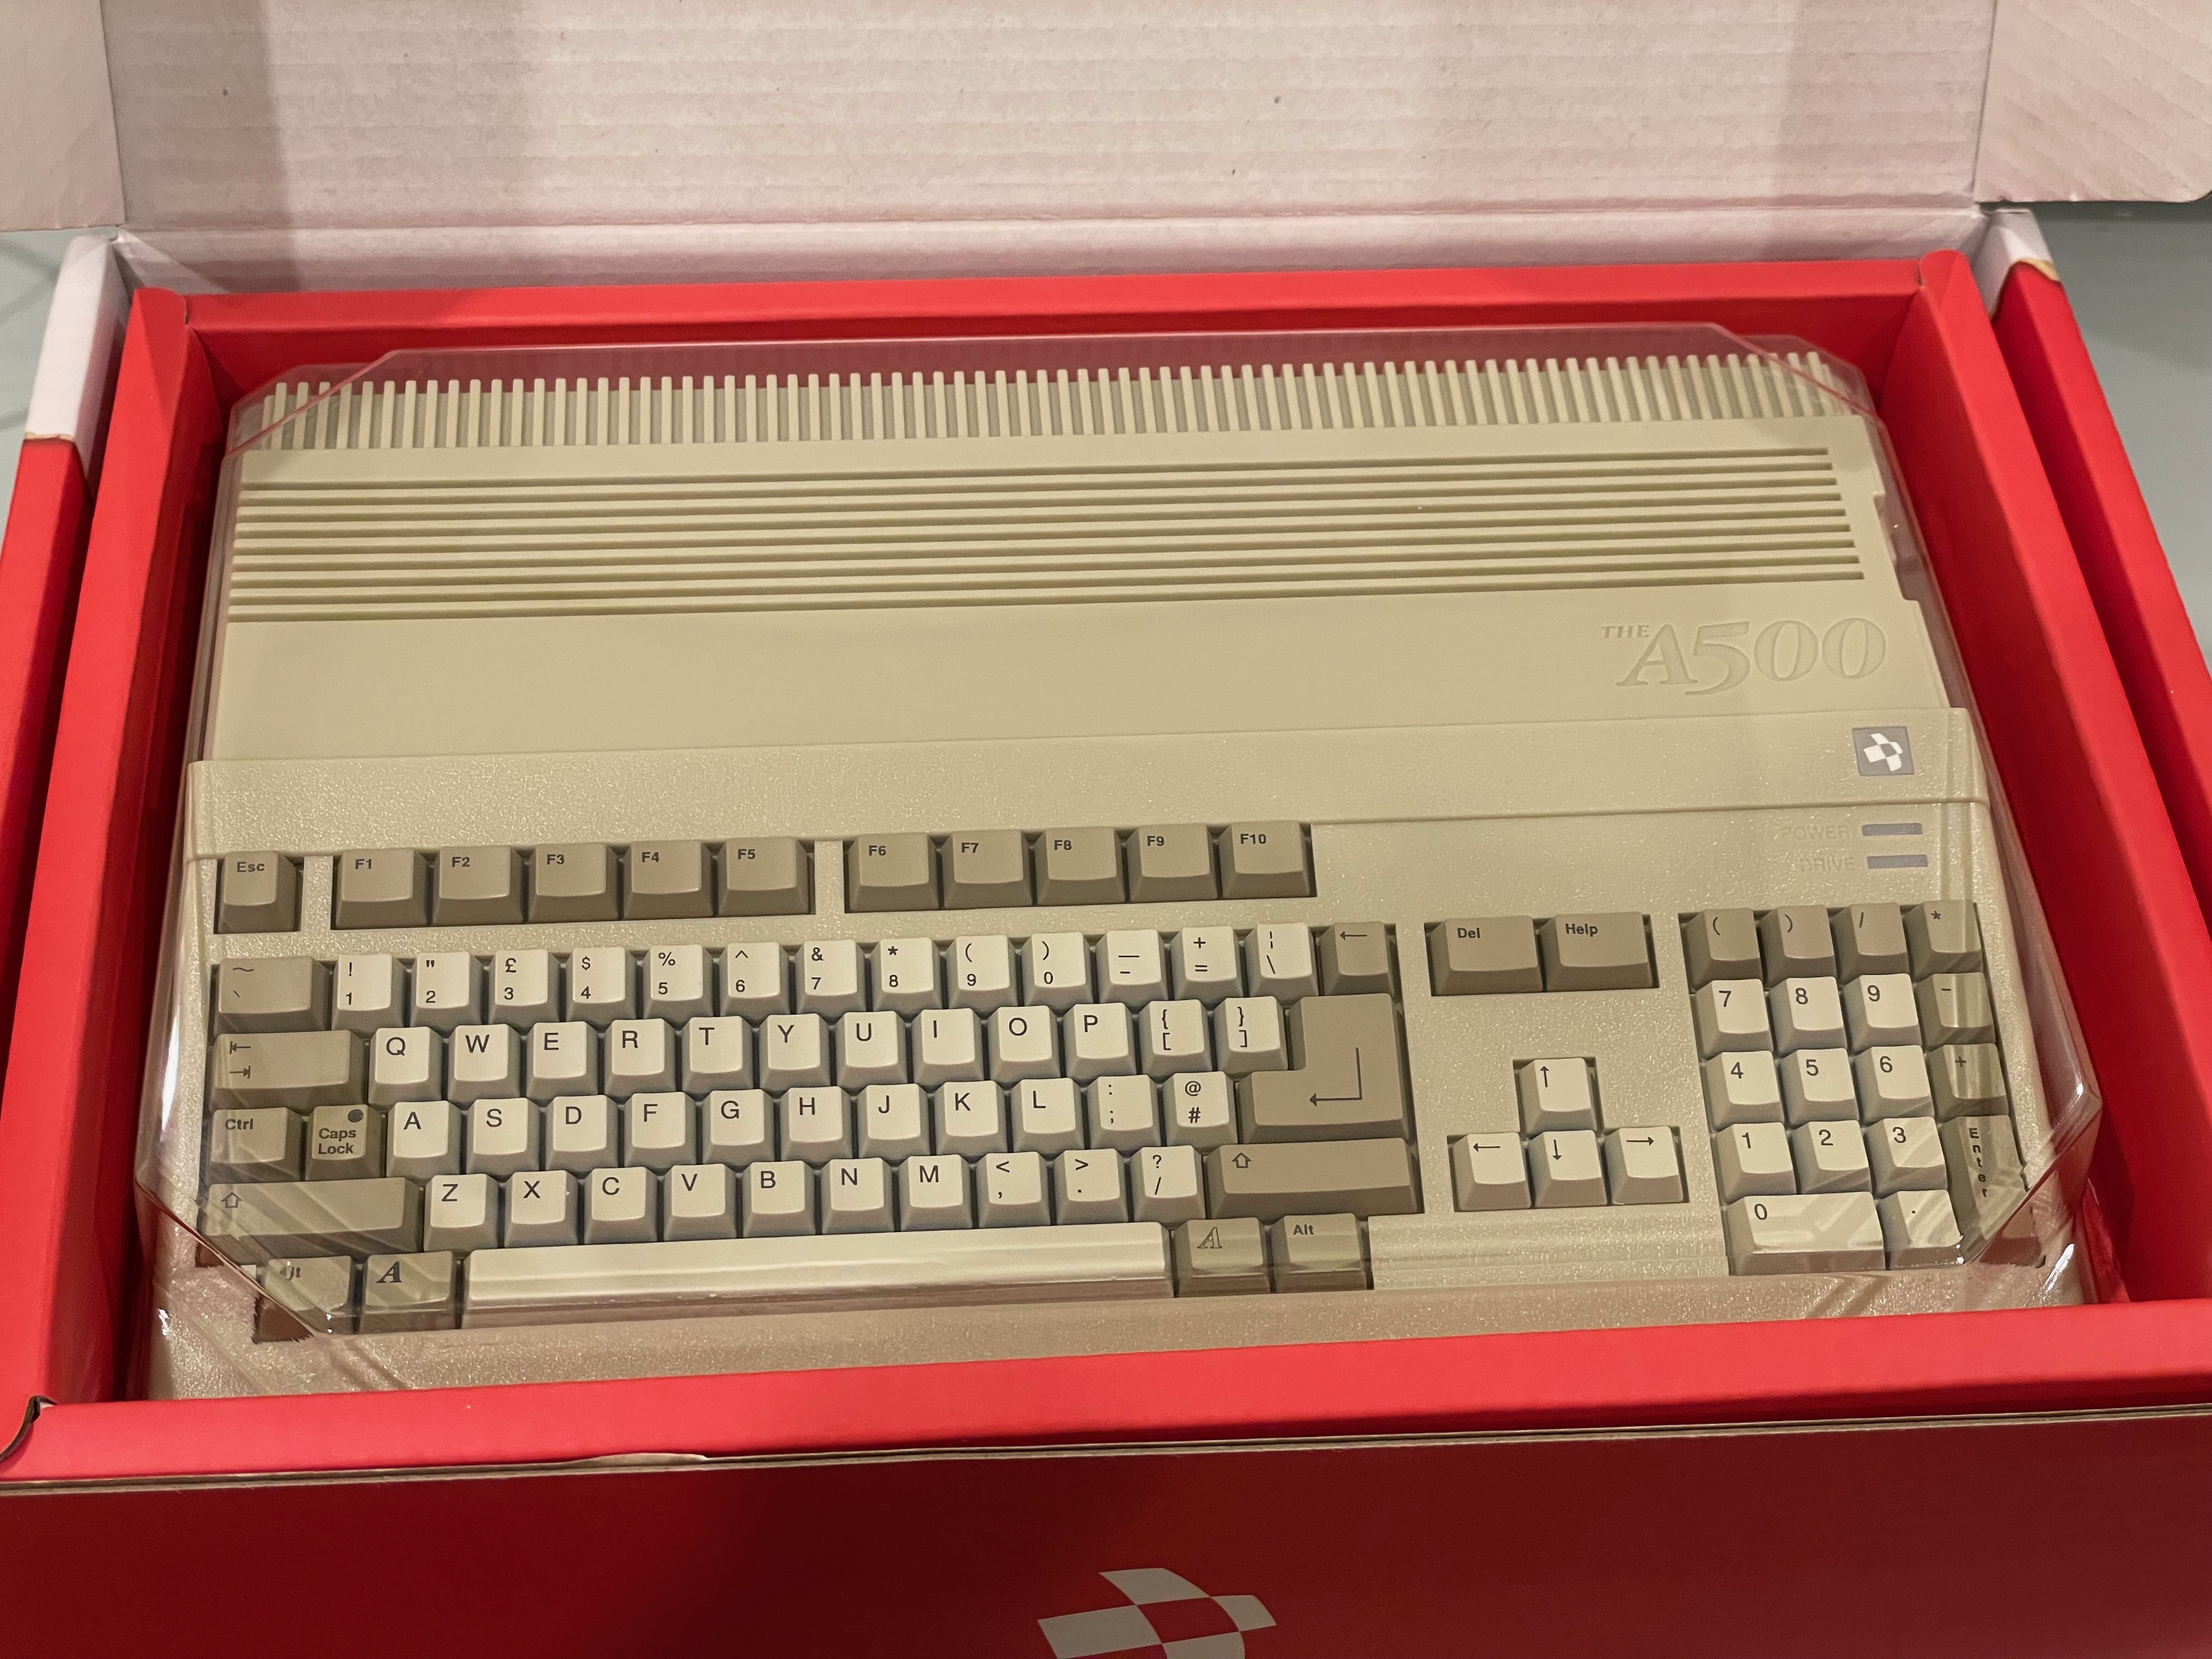 An Amiga 500 Mini is on the way